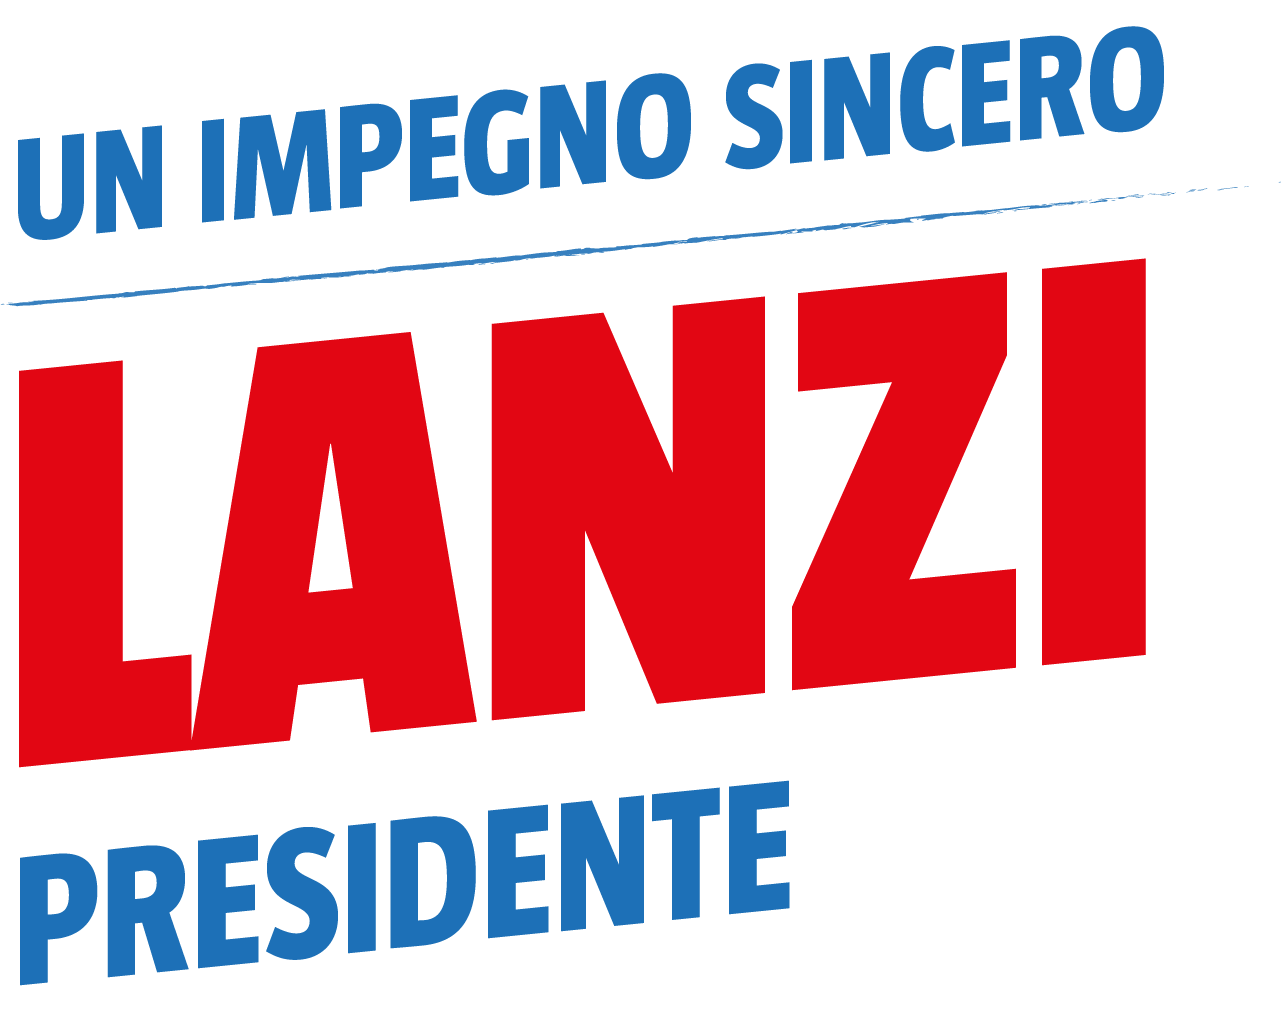 Gianluca Lanzi